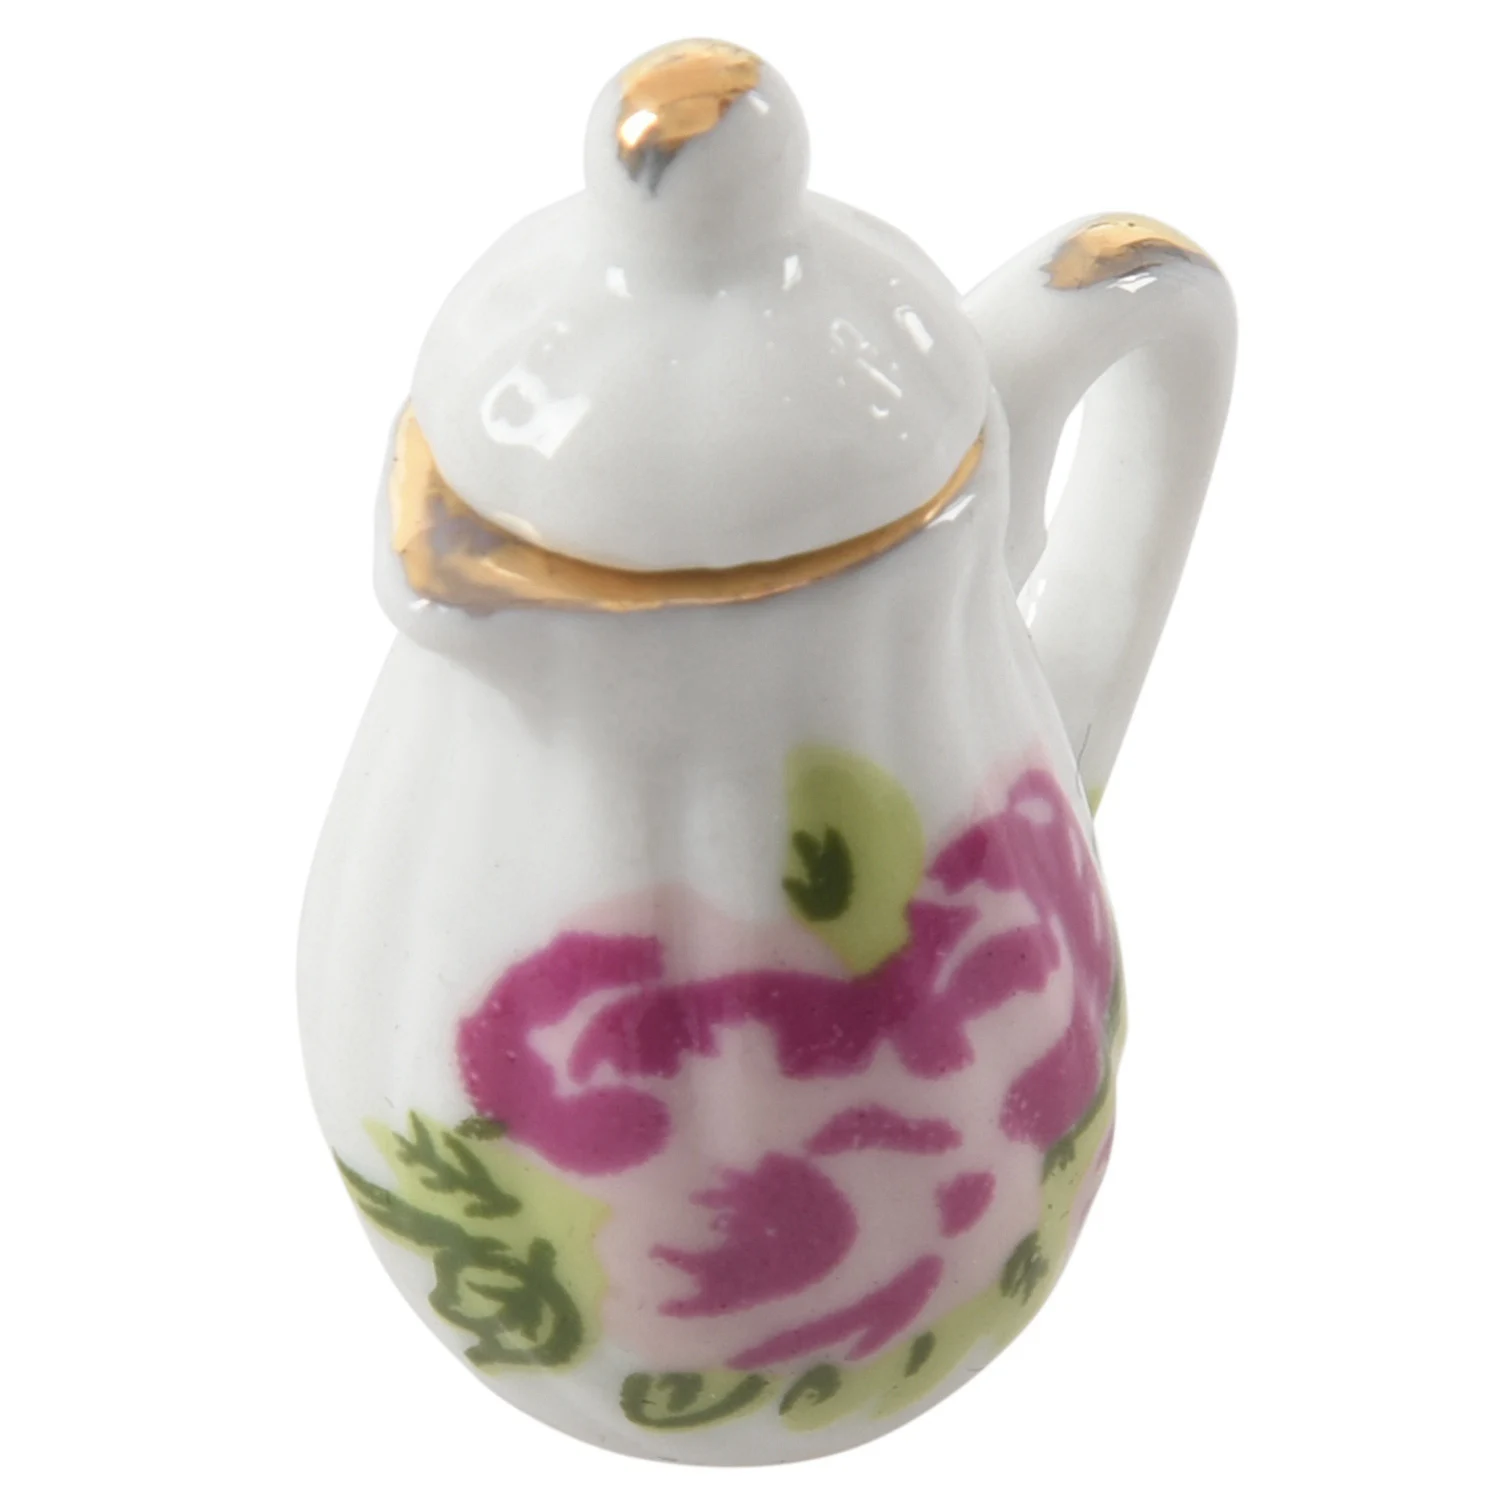 2 комплекта миниатюрной посуды, фарфоровый чайный сервиз - красочный цветочный принт и китайский Изображение 4